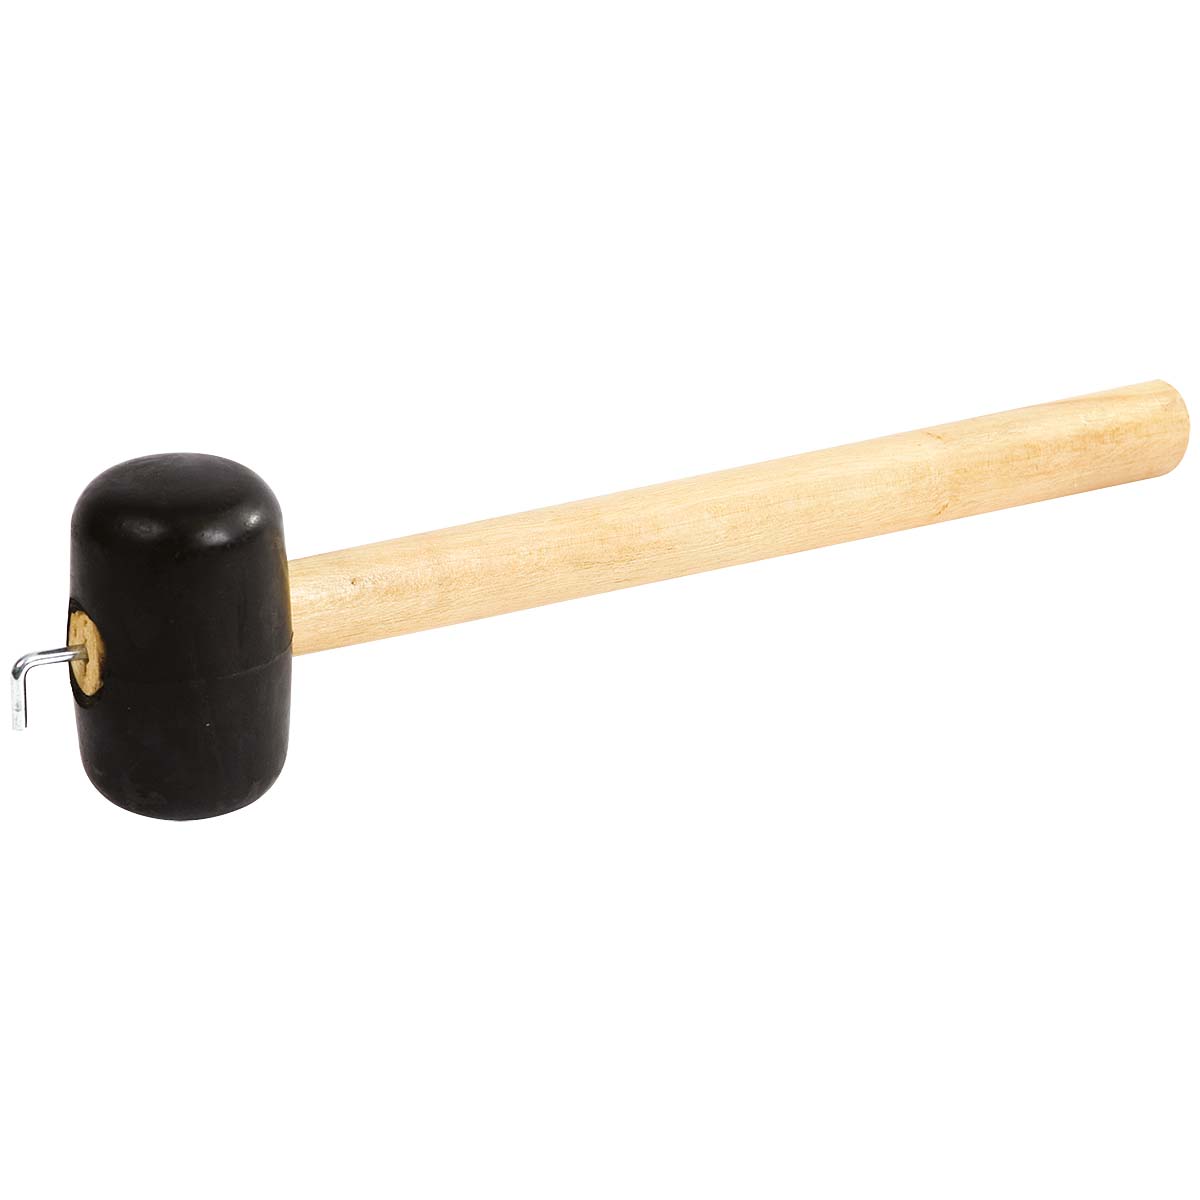 4114775 Een stevige rubber hamer. Voorzien van een houten steel, met op het uiteinde een sterke haringtrekker.